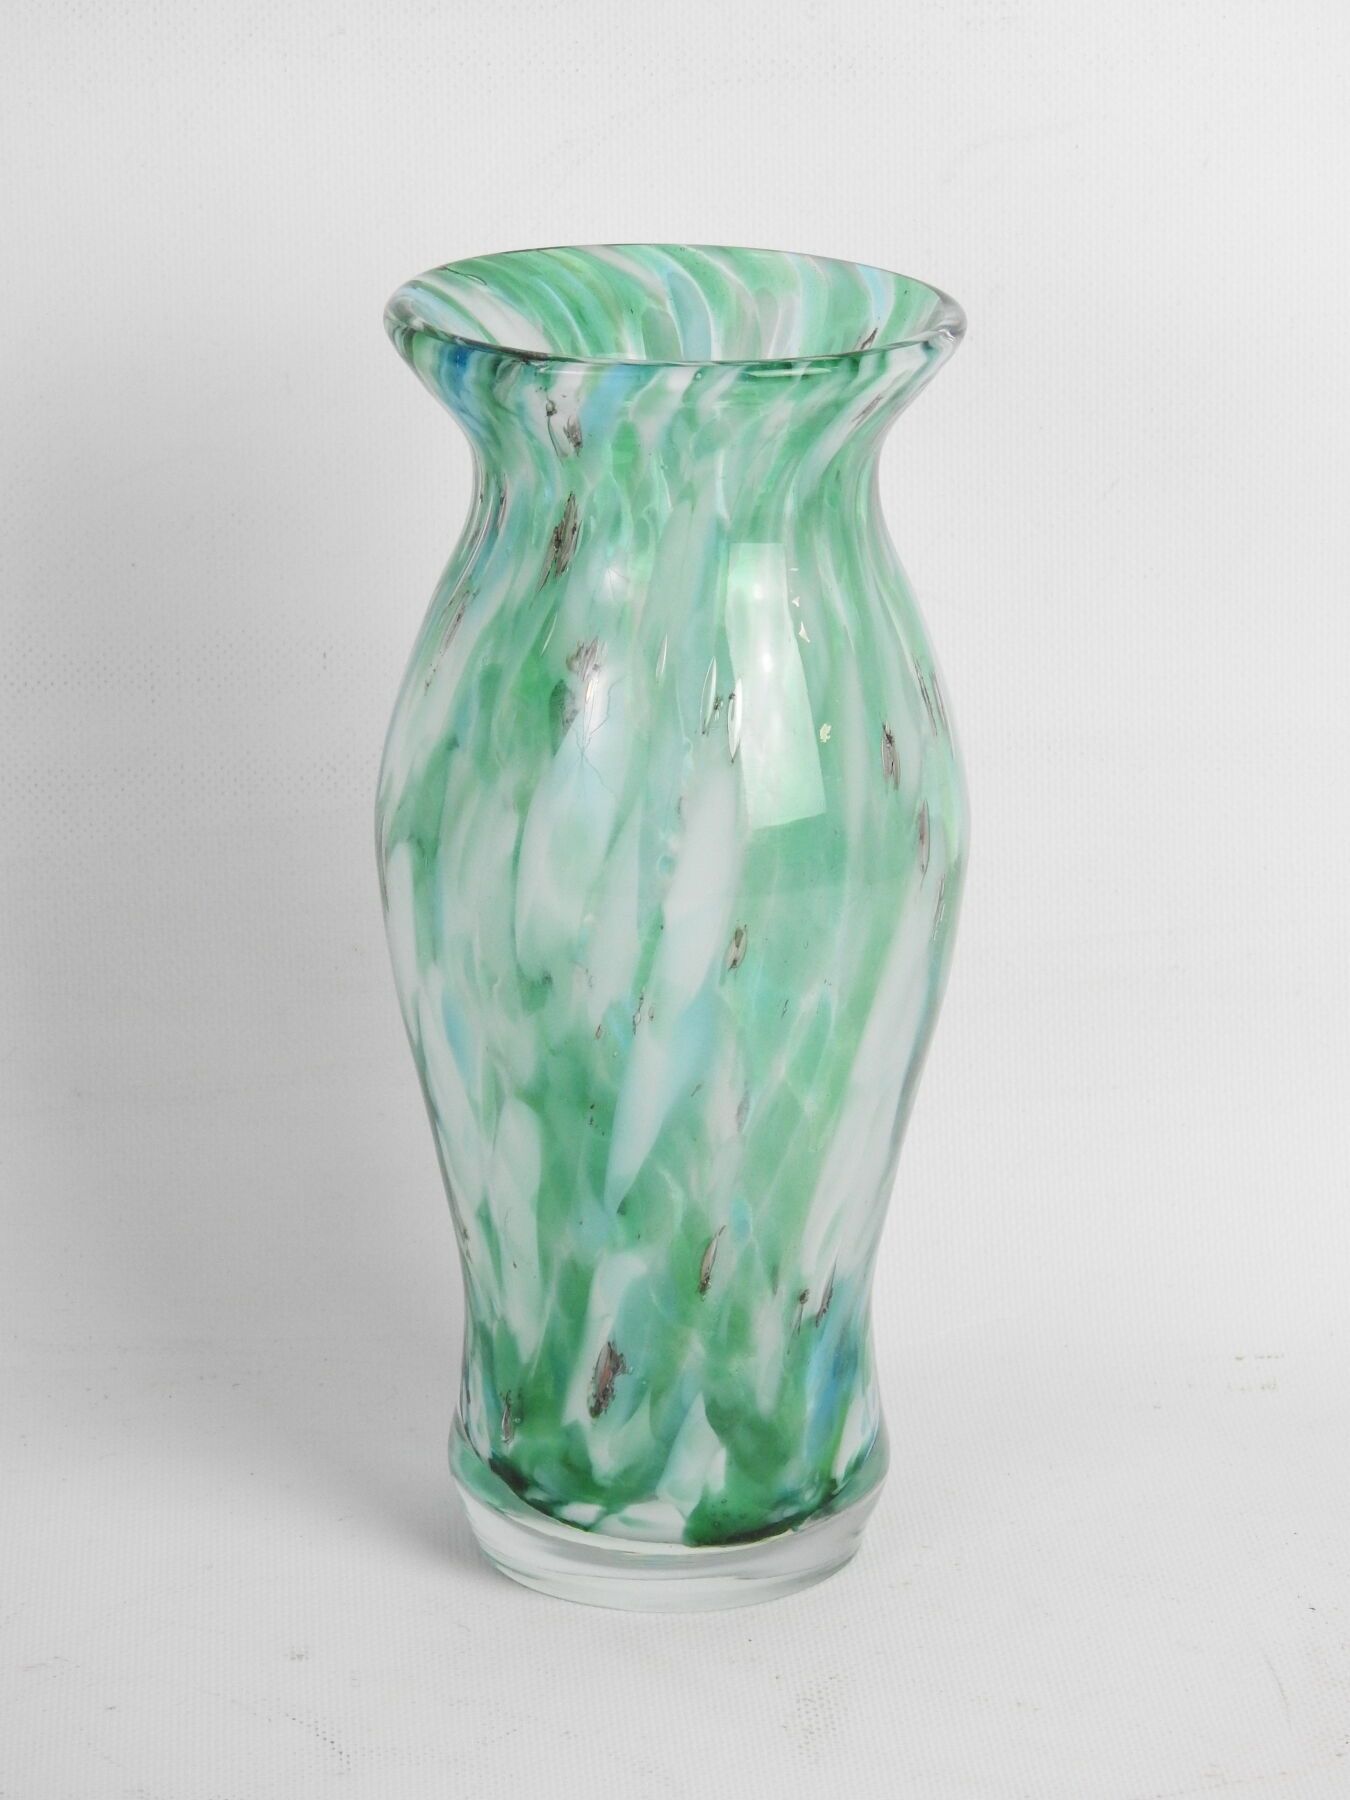 Null 一个绿色和白色斑点的玻璃花瓶，呈柱状。高25厘米。